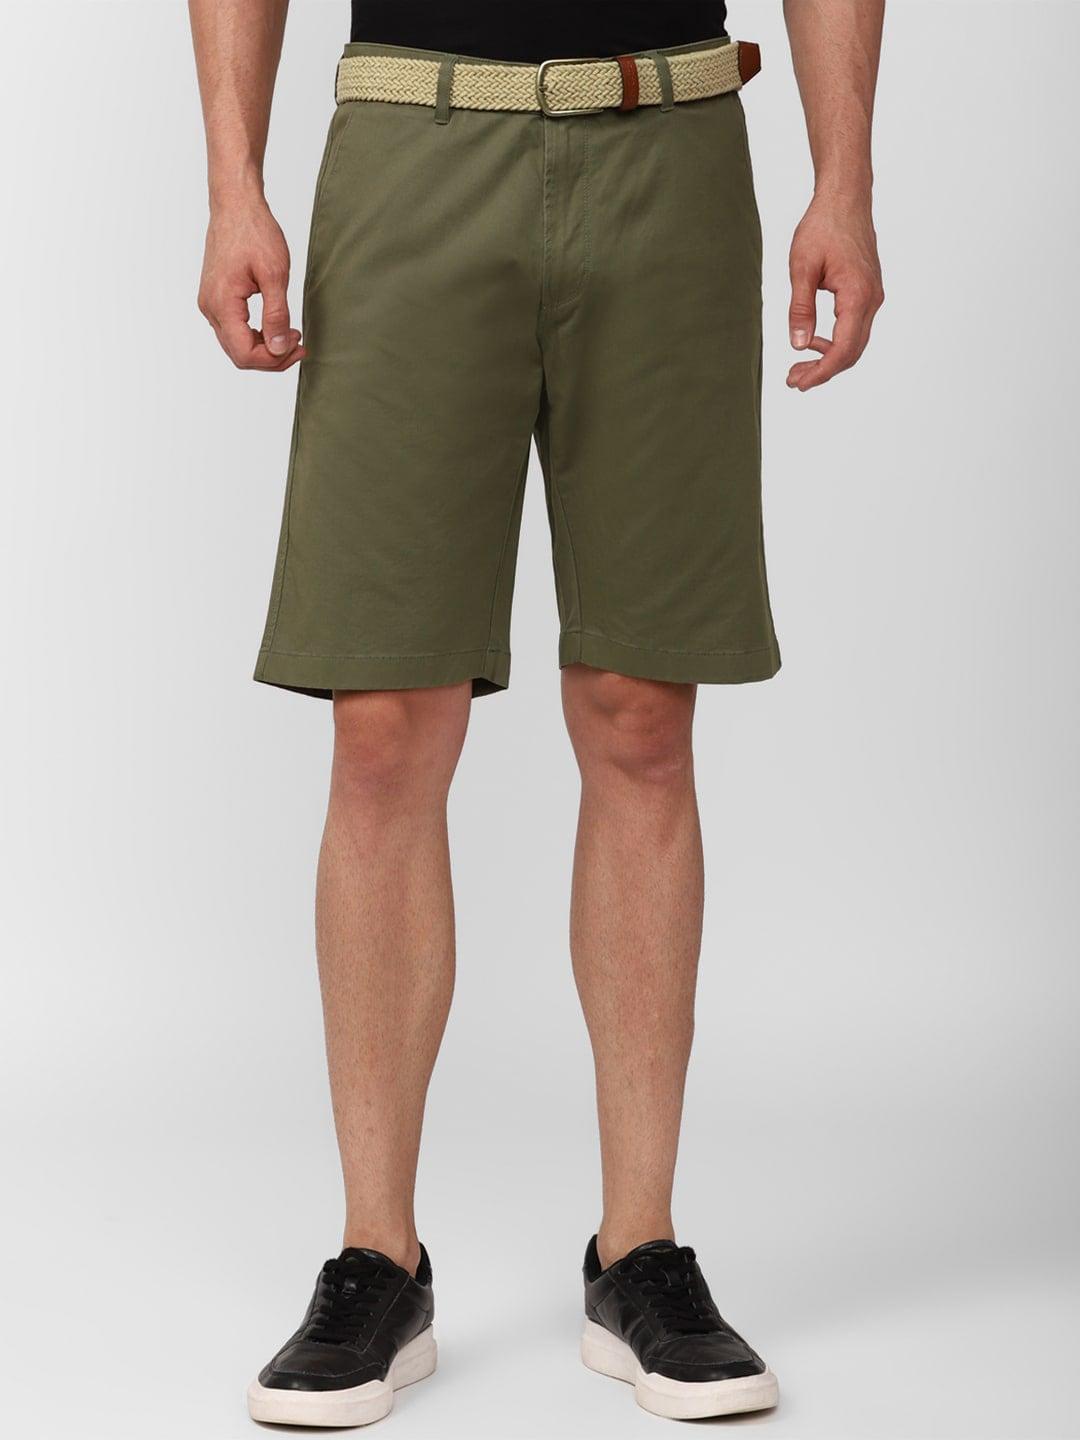 simon-carter-london-men-slim-fit-mid-rise-shorts